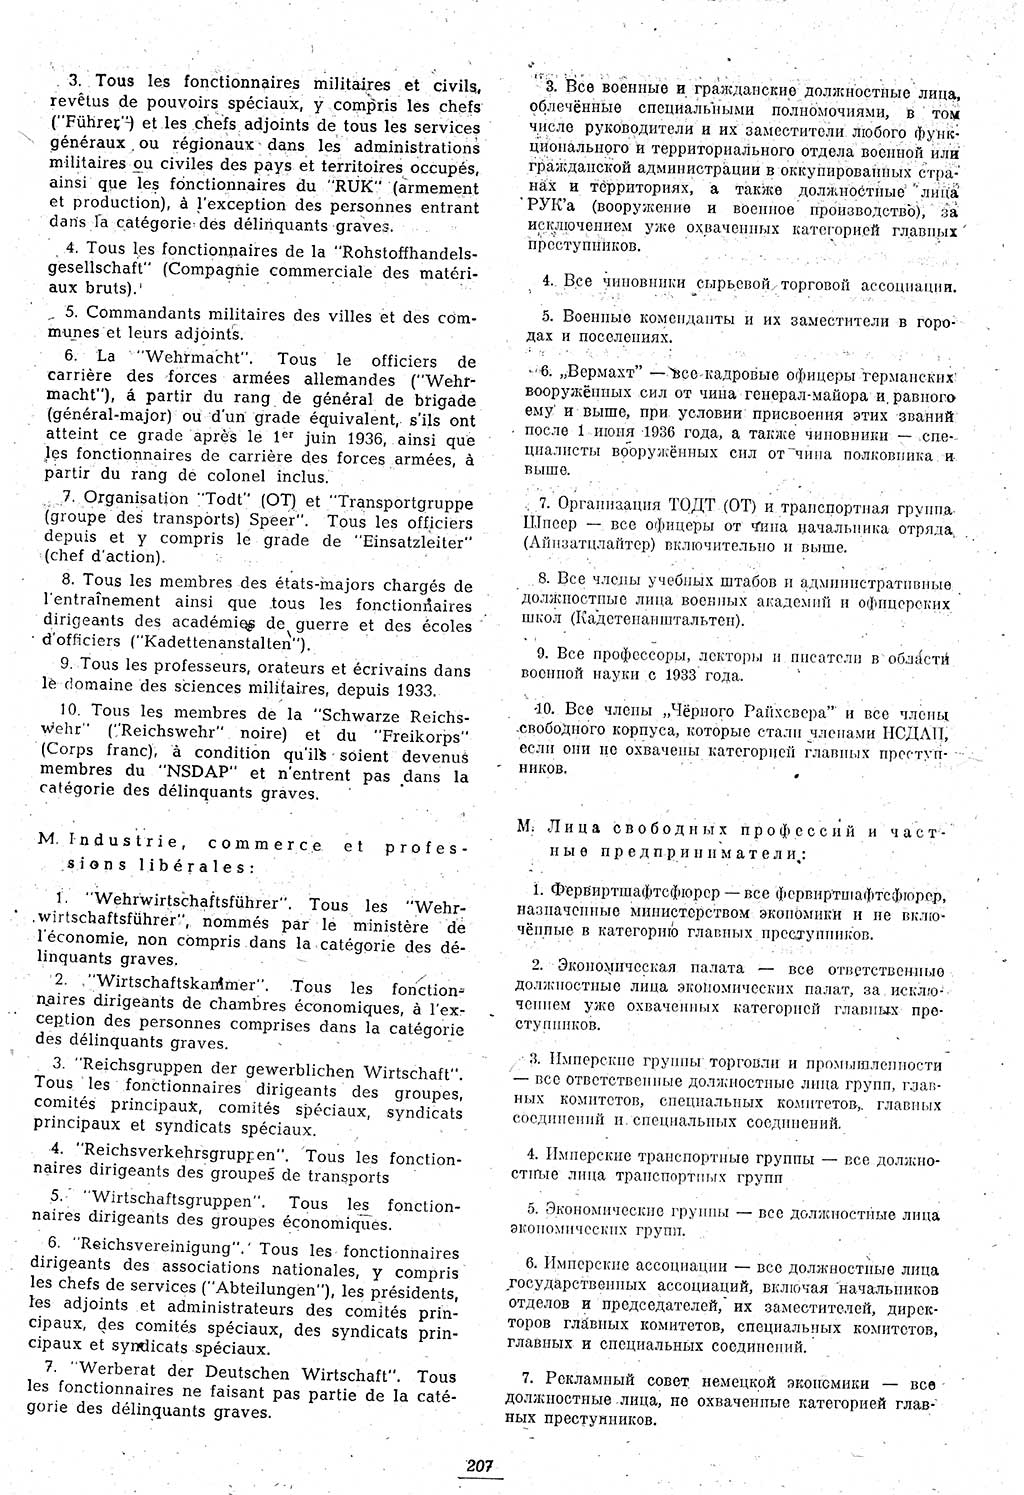 Amtsblatt des Kontrollrats (ABlKR) in Deutschland 1946, Seite 207/1 (ABlKR Dtl. 1946, S. 207/1)